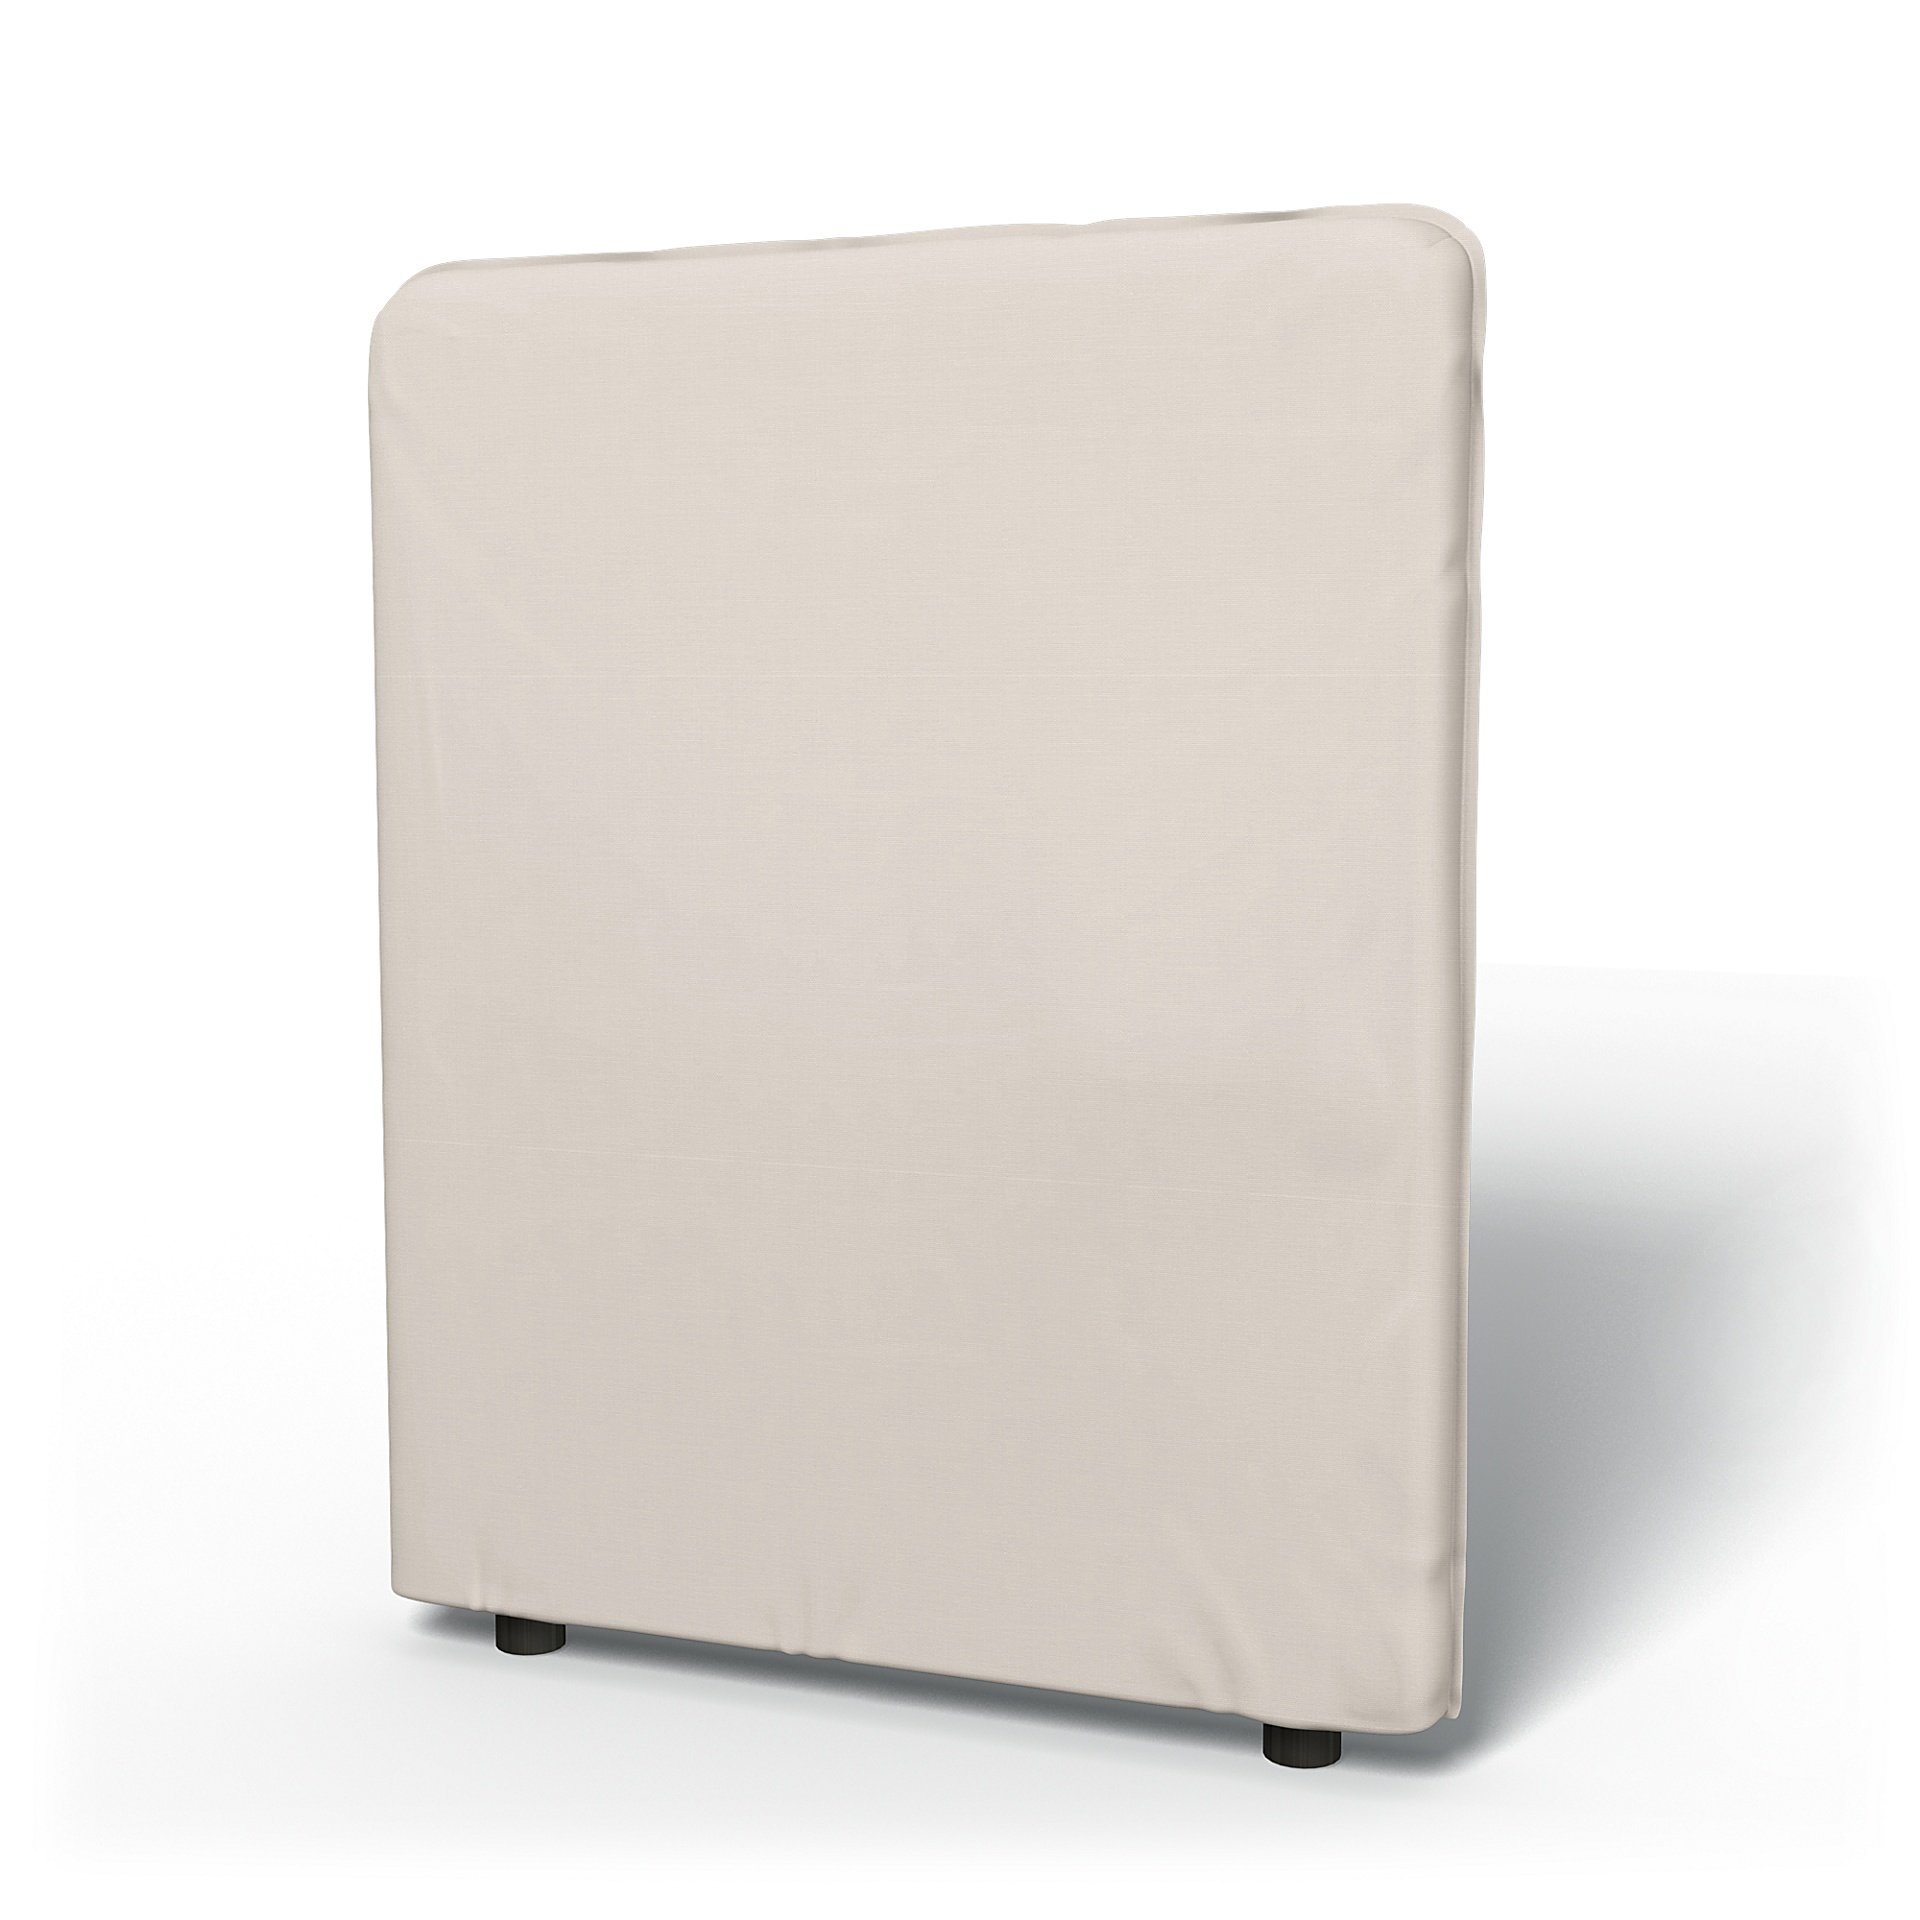 IKEA - Vallentuna High Backrest Cover 80x100cm 32x39in, Soft White, Cotton - Bemz